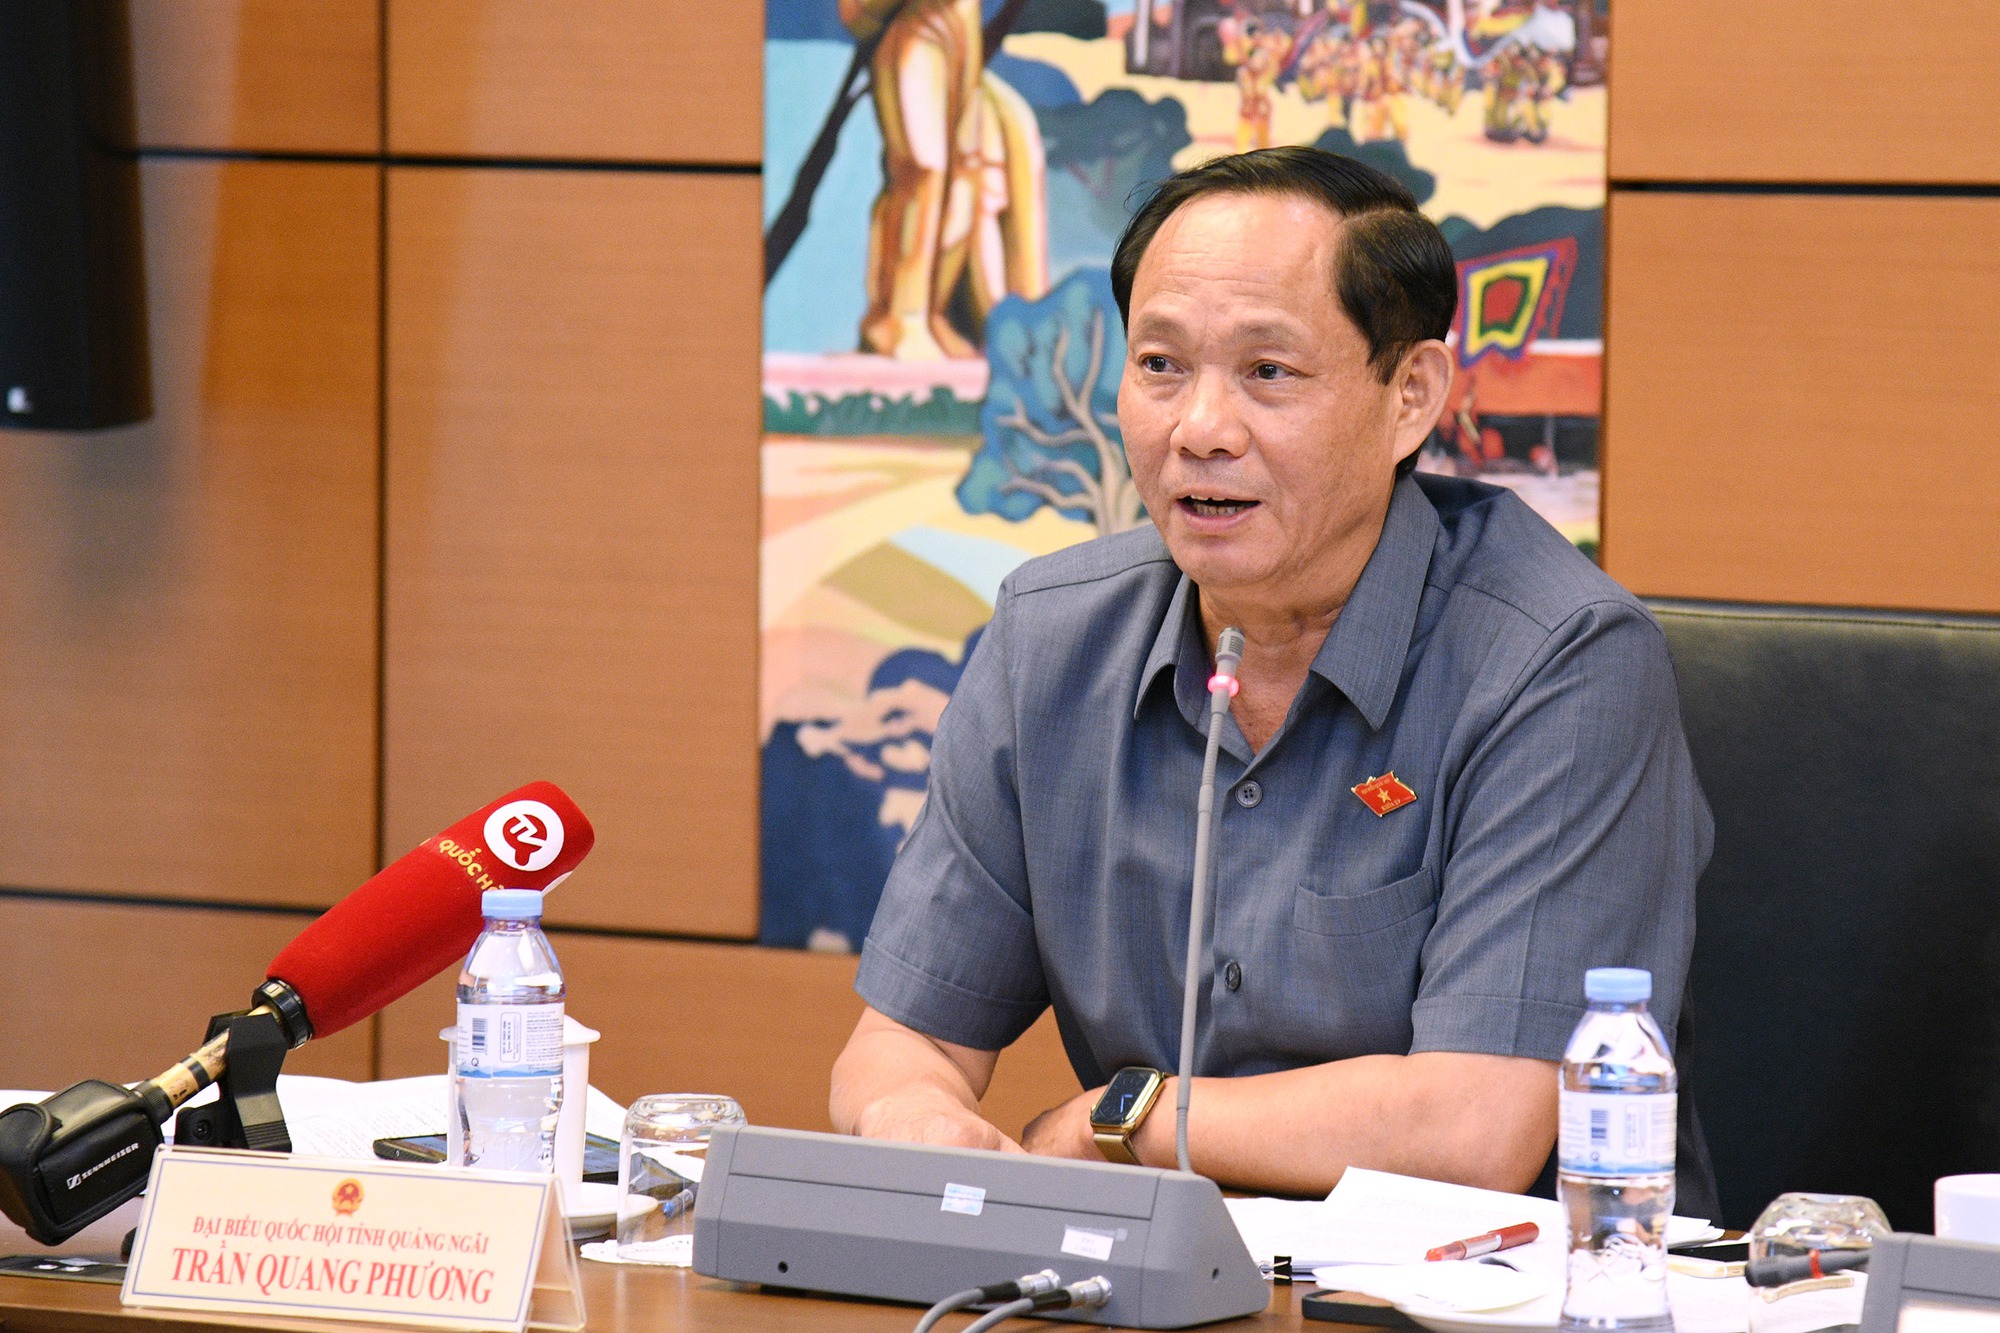 Phó Chủ tịch Quốc hội Trần Quang Phương: Chuyển đổi số quốc gia là quá trình &quot;dò đá qua sông&quot; - Ảnh 2.